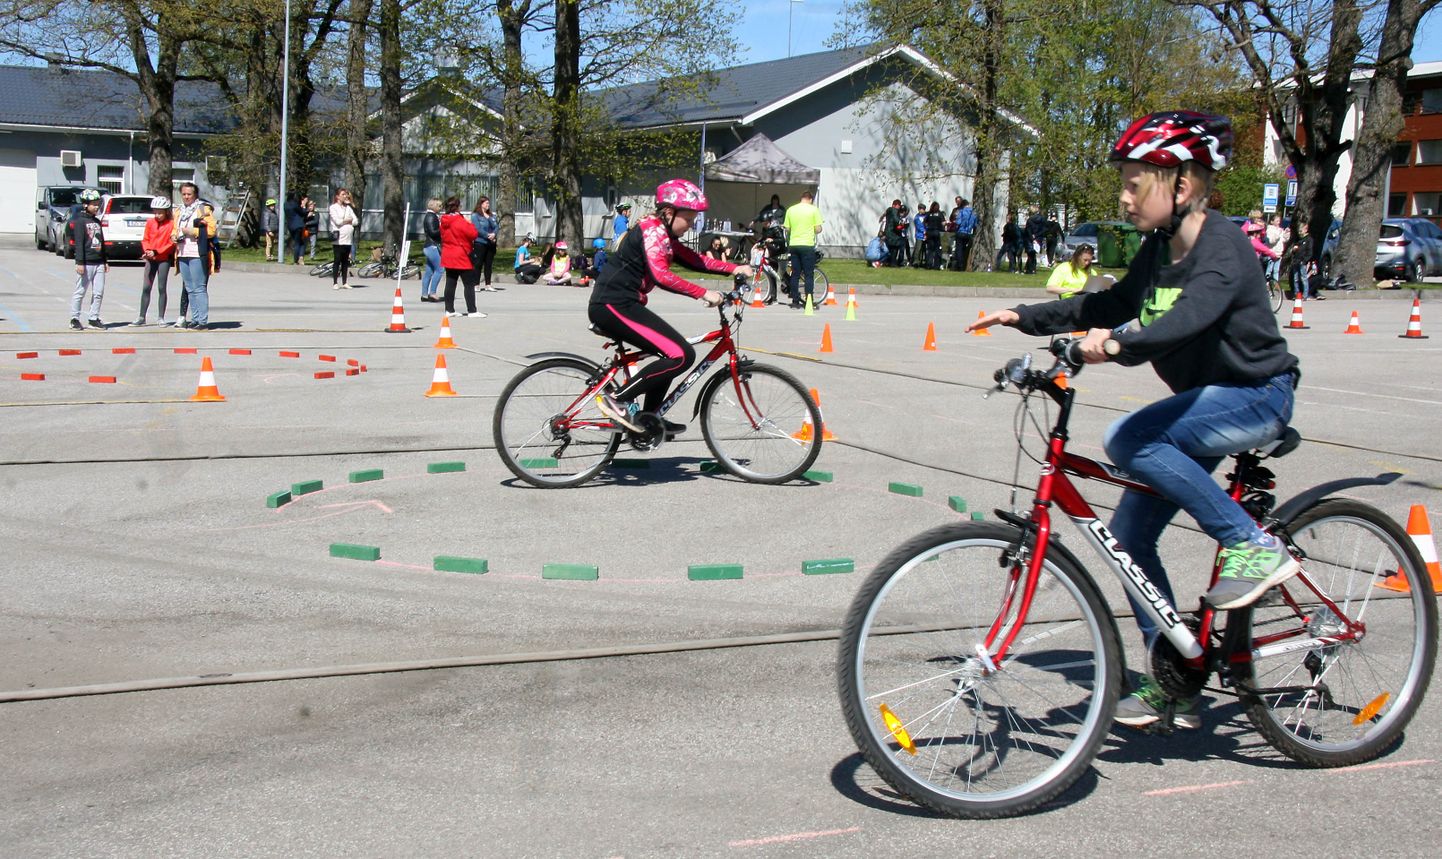 В рамках соревнования "Vigurivänt" молодых велосипедистов обучают уже почти два десятилетия, и можно надеяться, что более умелое управление велосипедом и знание ПДД помогли предотвратить немало аварий.